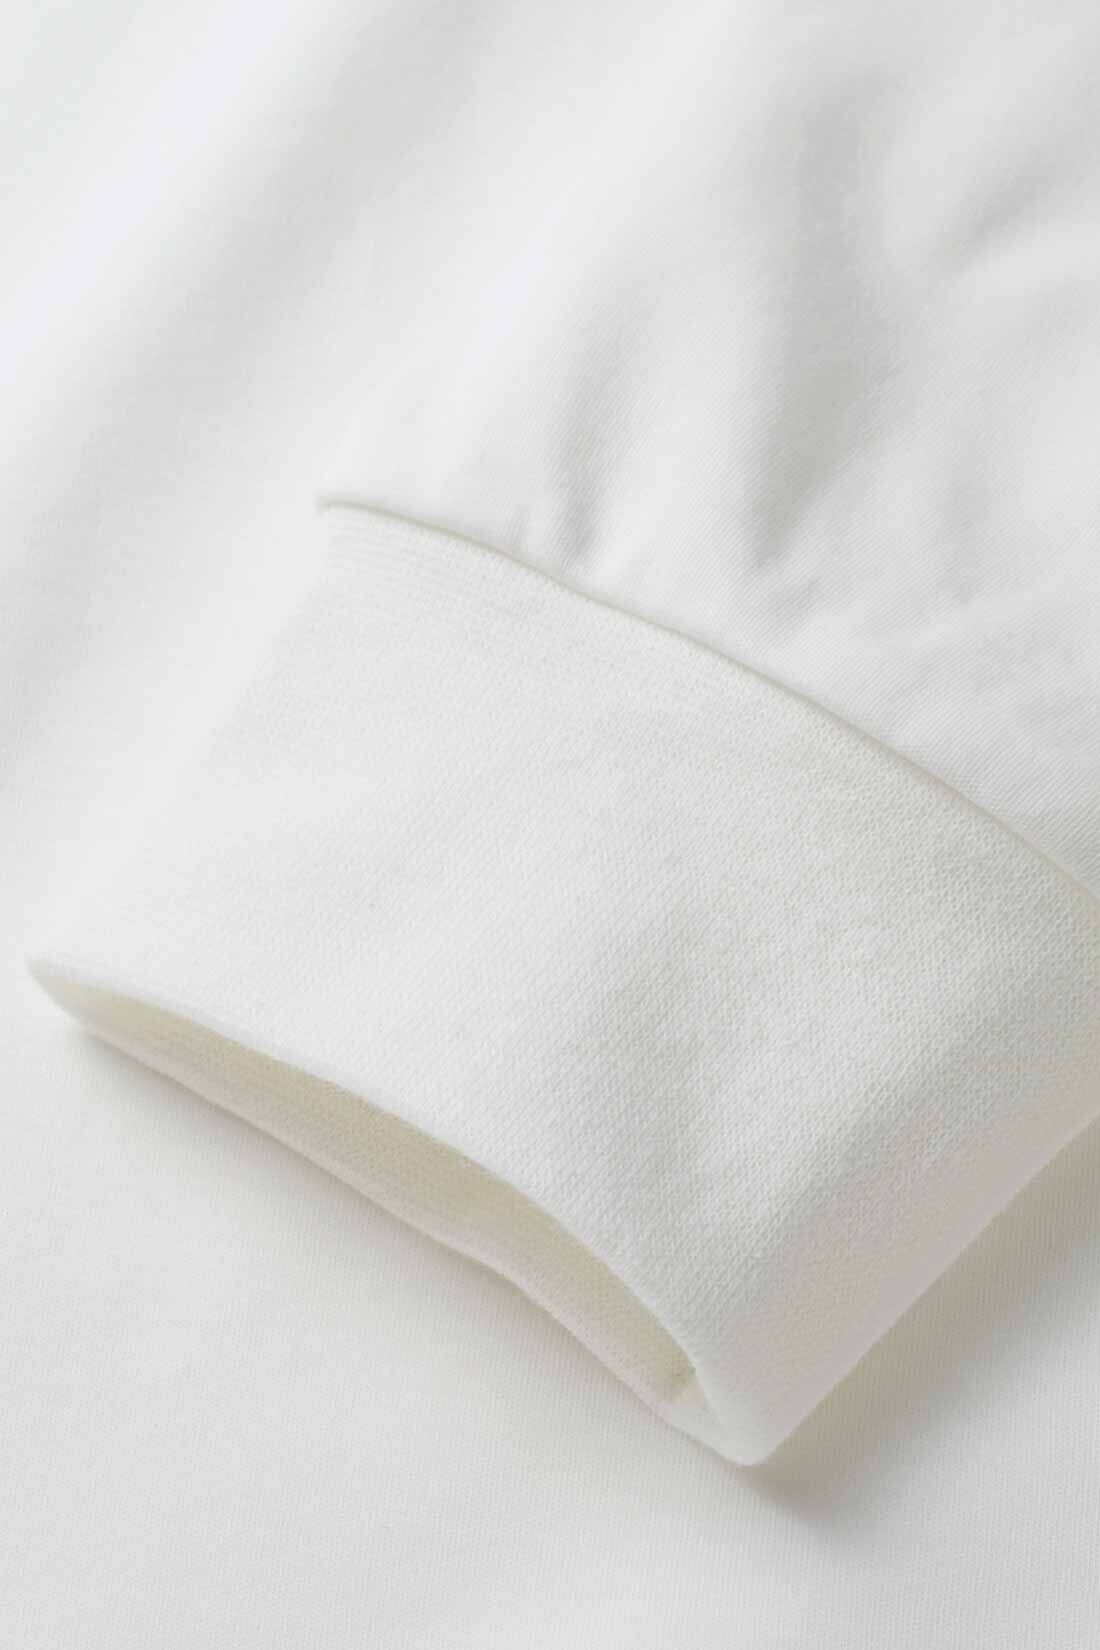 THREE FIFTY STANDARD|THREE FIFTY STANDARD 綿100％の機能素材ロングTシャツ〈オフホワイト〉|汗をかいてもサラリと快適な生地は、ほどよい厚みの綿100%。